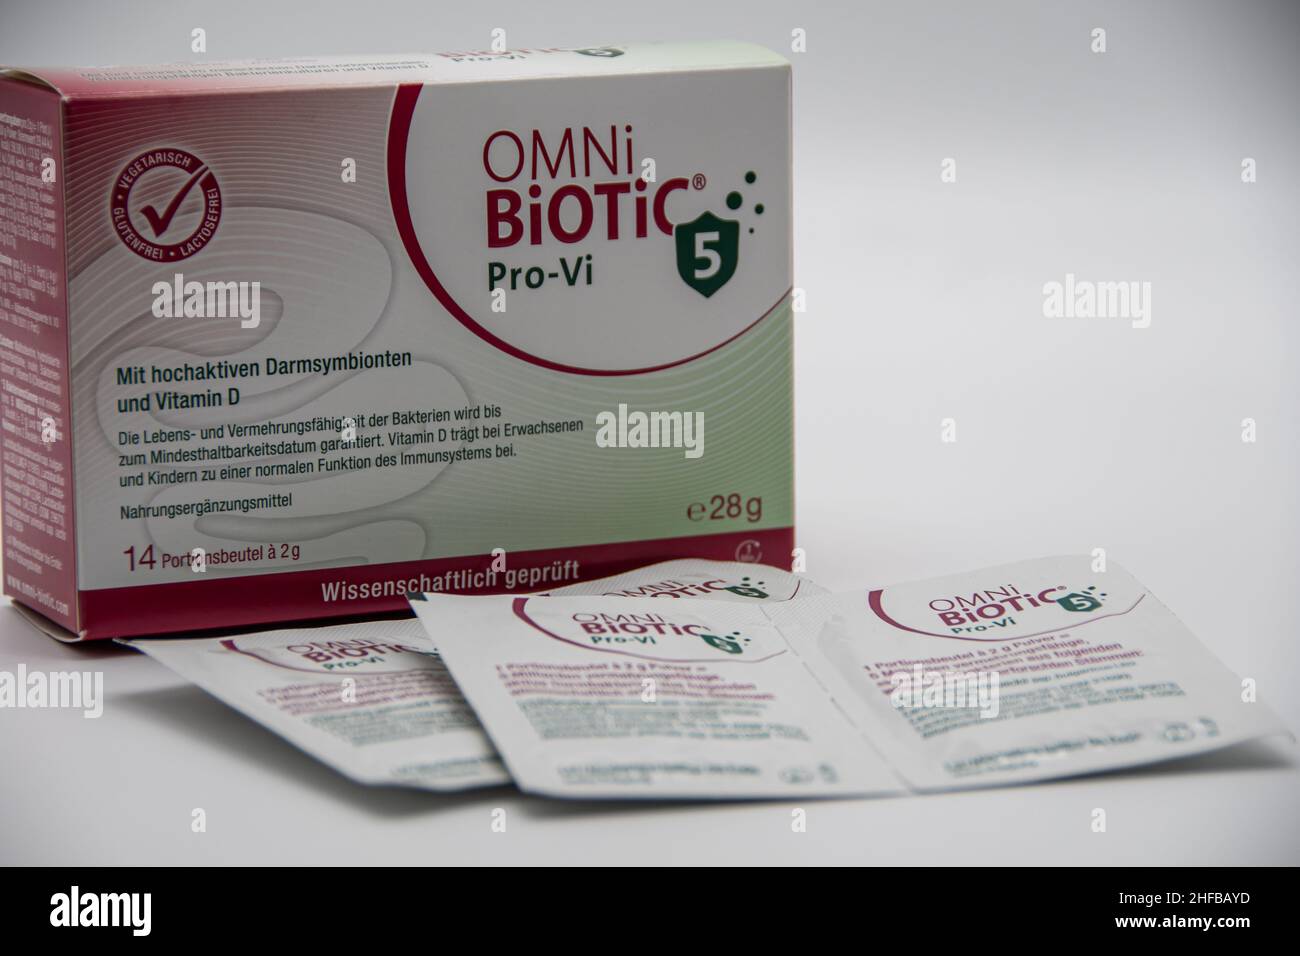 Rheinbach, Allemagne 12 janvier 2022, Un paquet de suppléments alimentaires de marque 'Omni biotic' Pro-VI sur fond léger Banque D'Images